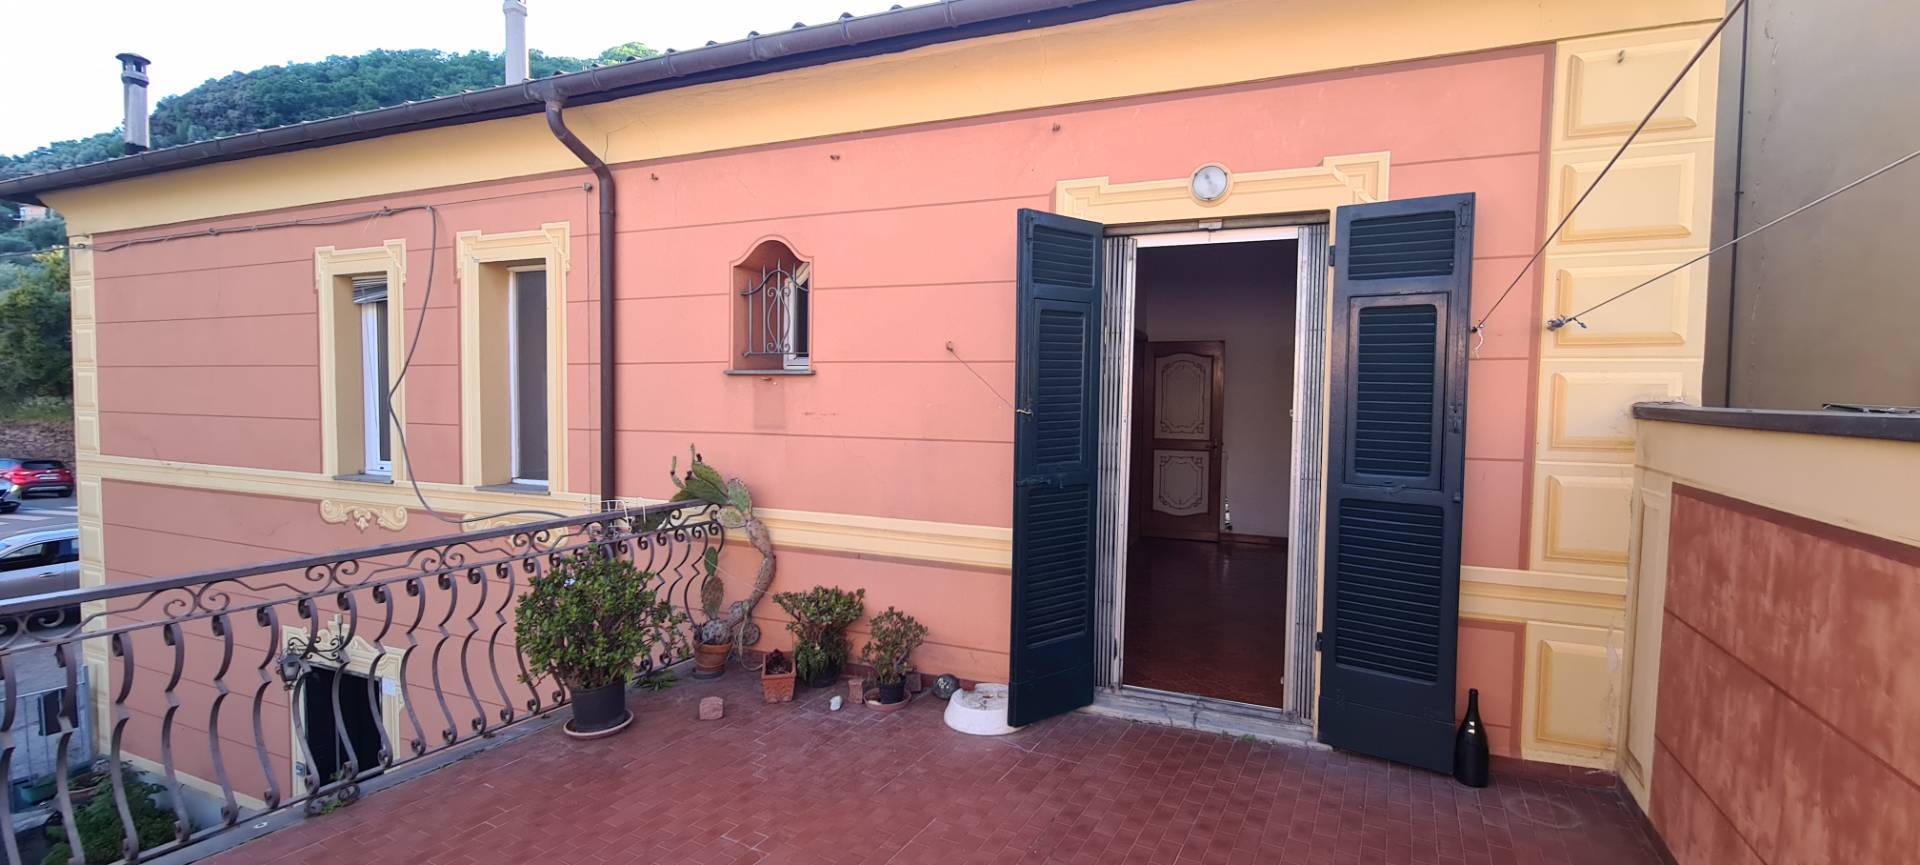 Villa Bifamiliare in vendita a Chiavari